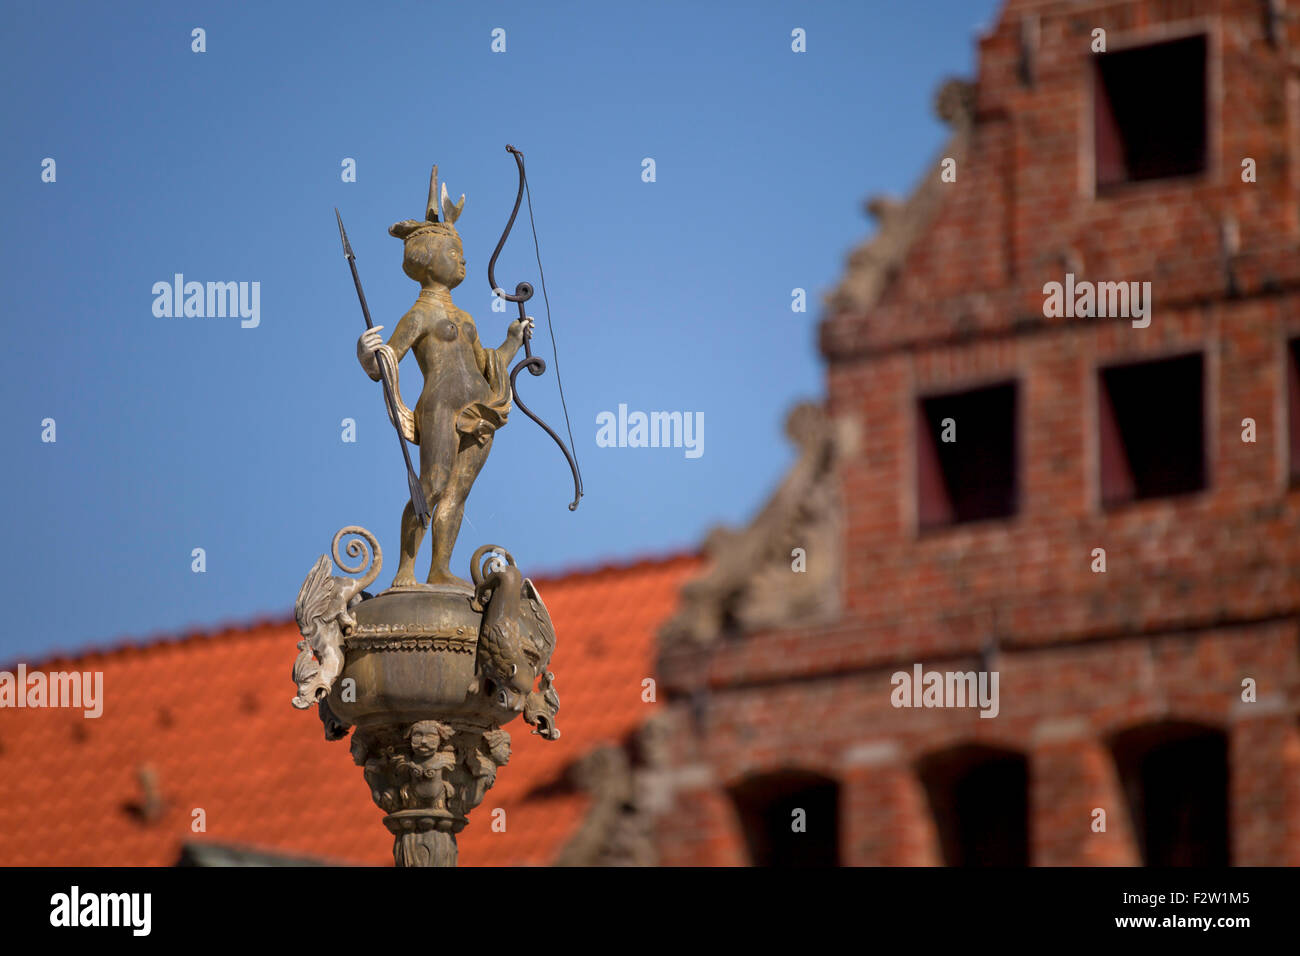 La déesse romaine Luna avec arc et flèche sur la place du marché, la ville hanséatique de Lunebourg, Basse-Saxe, Allemagne Banque D'Images